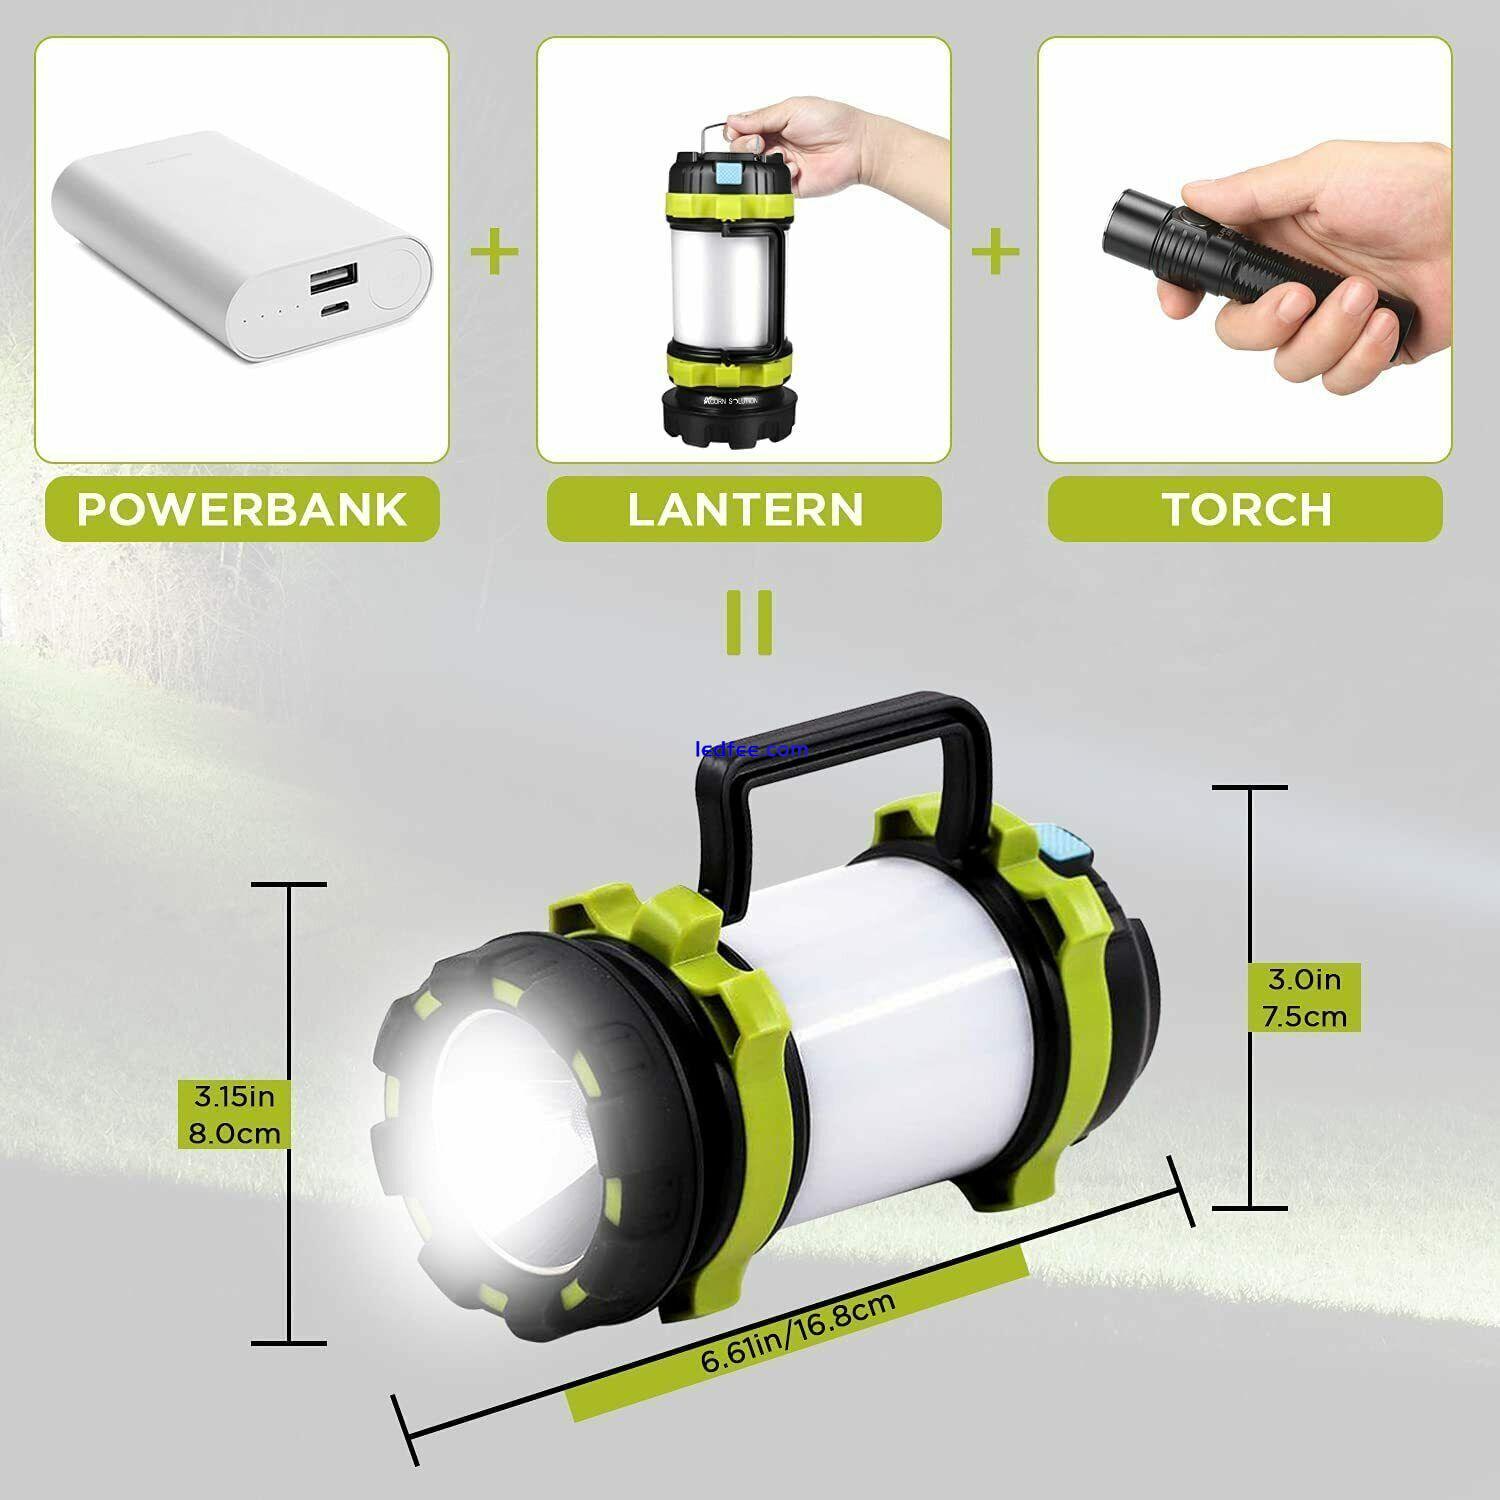 800 Lumen Camping Lantern, 6 Light Modes, 3700mAh Power Bank, IPX6 Water Resist 1 